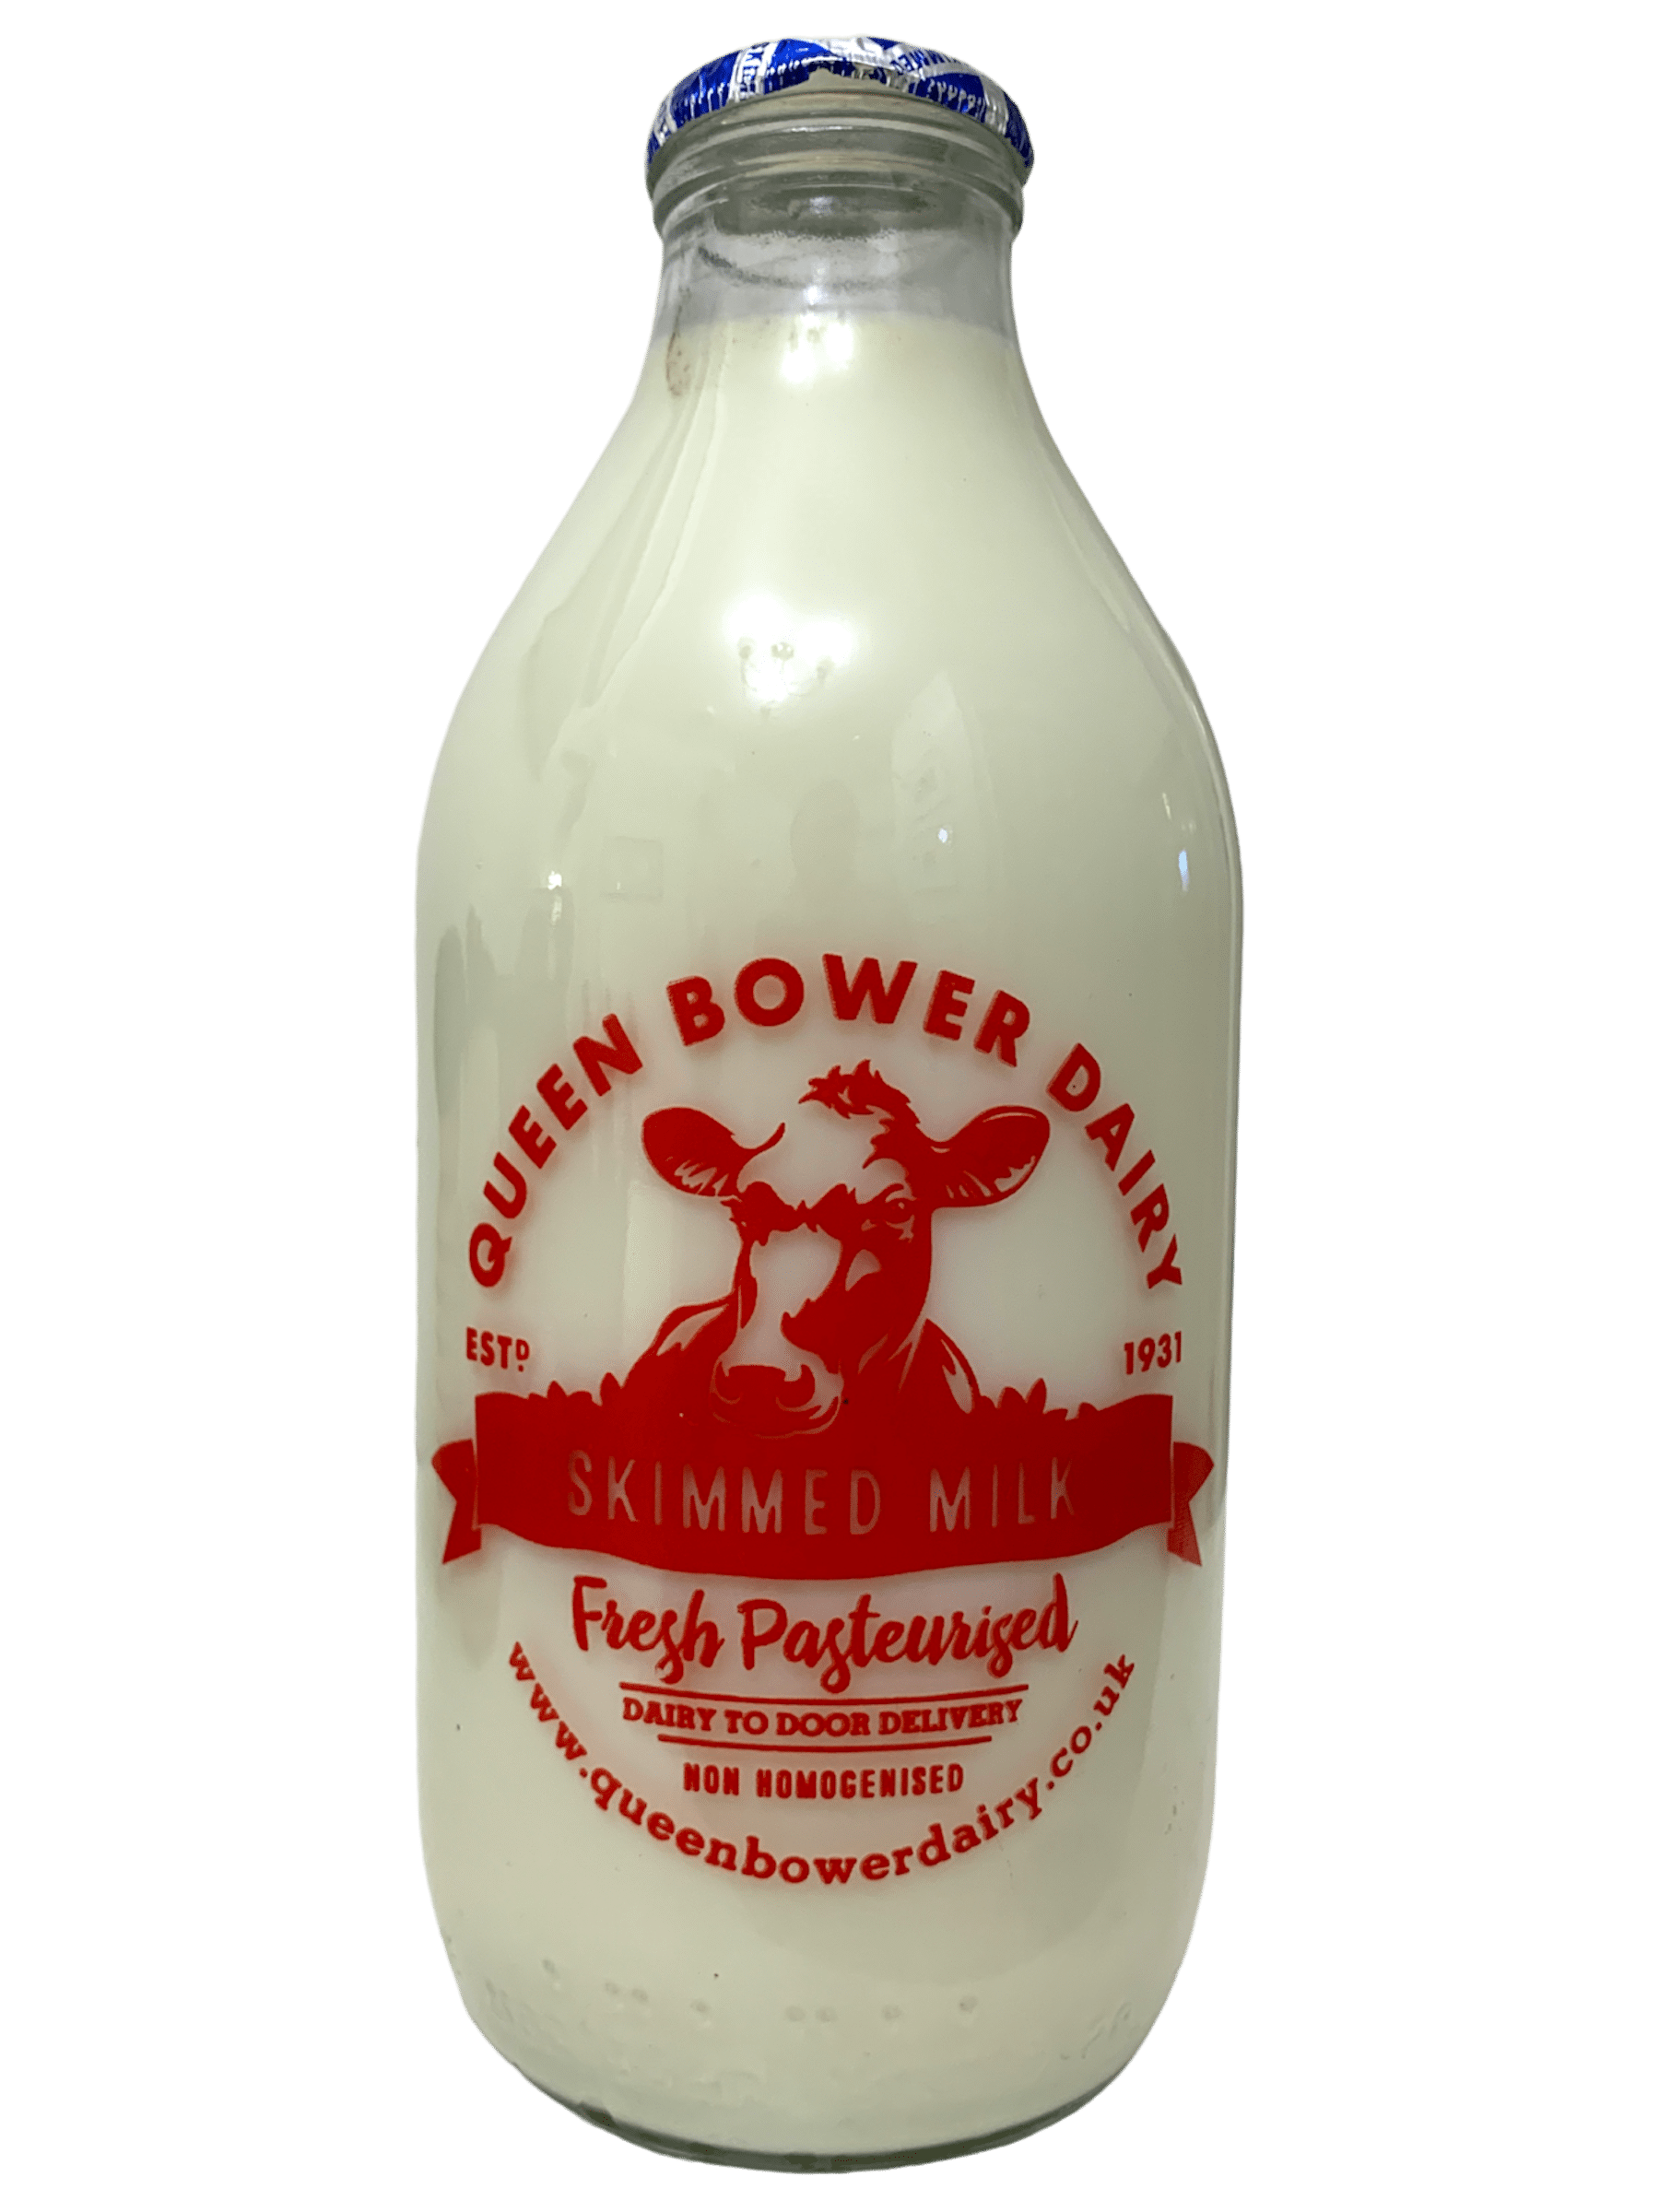 Queen Bower Dairy - www.Kelis.info #KelisTheBottleBank